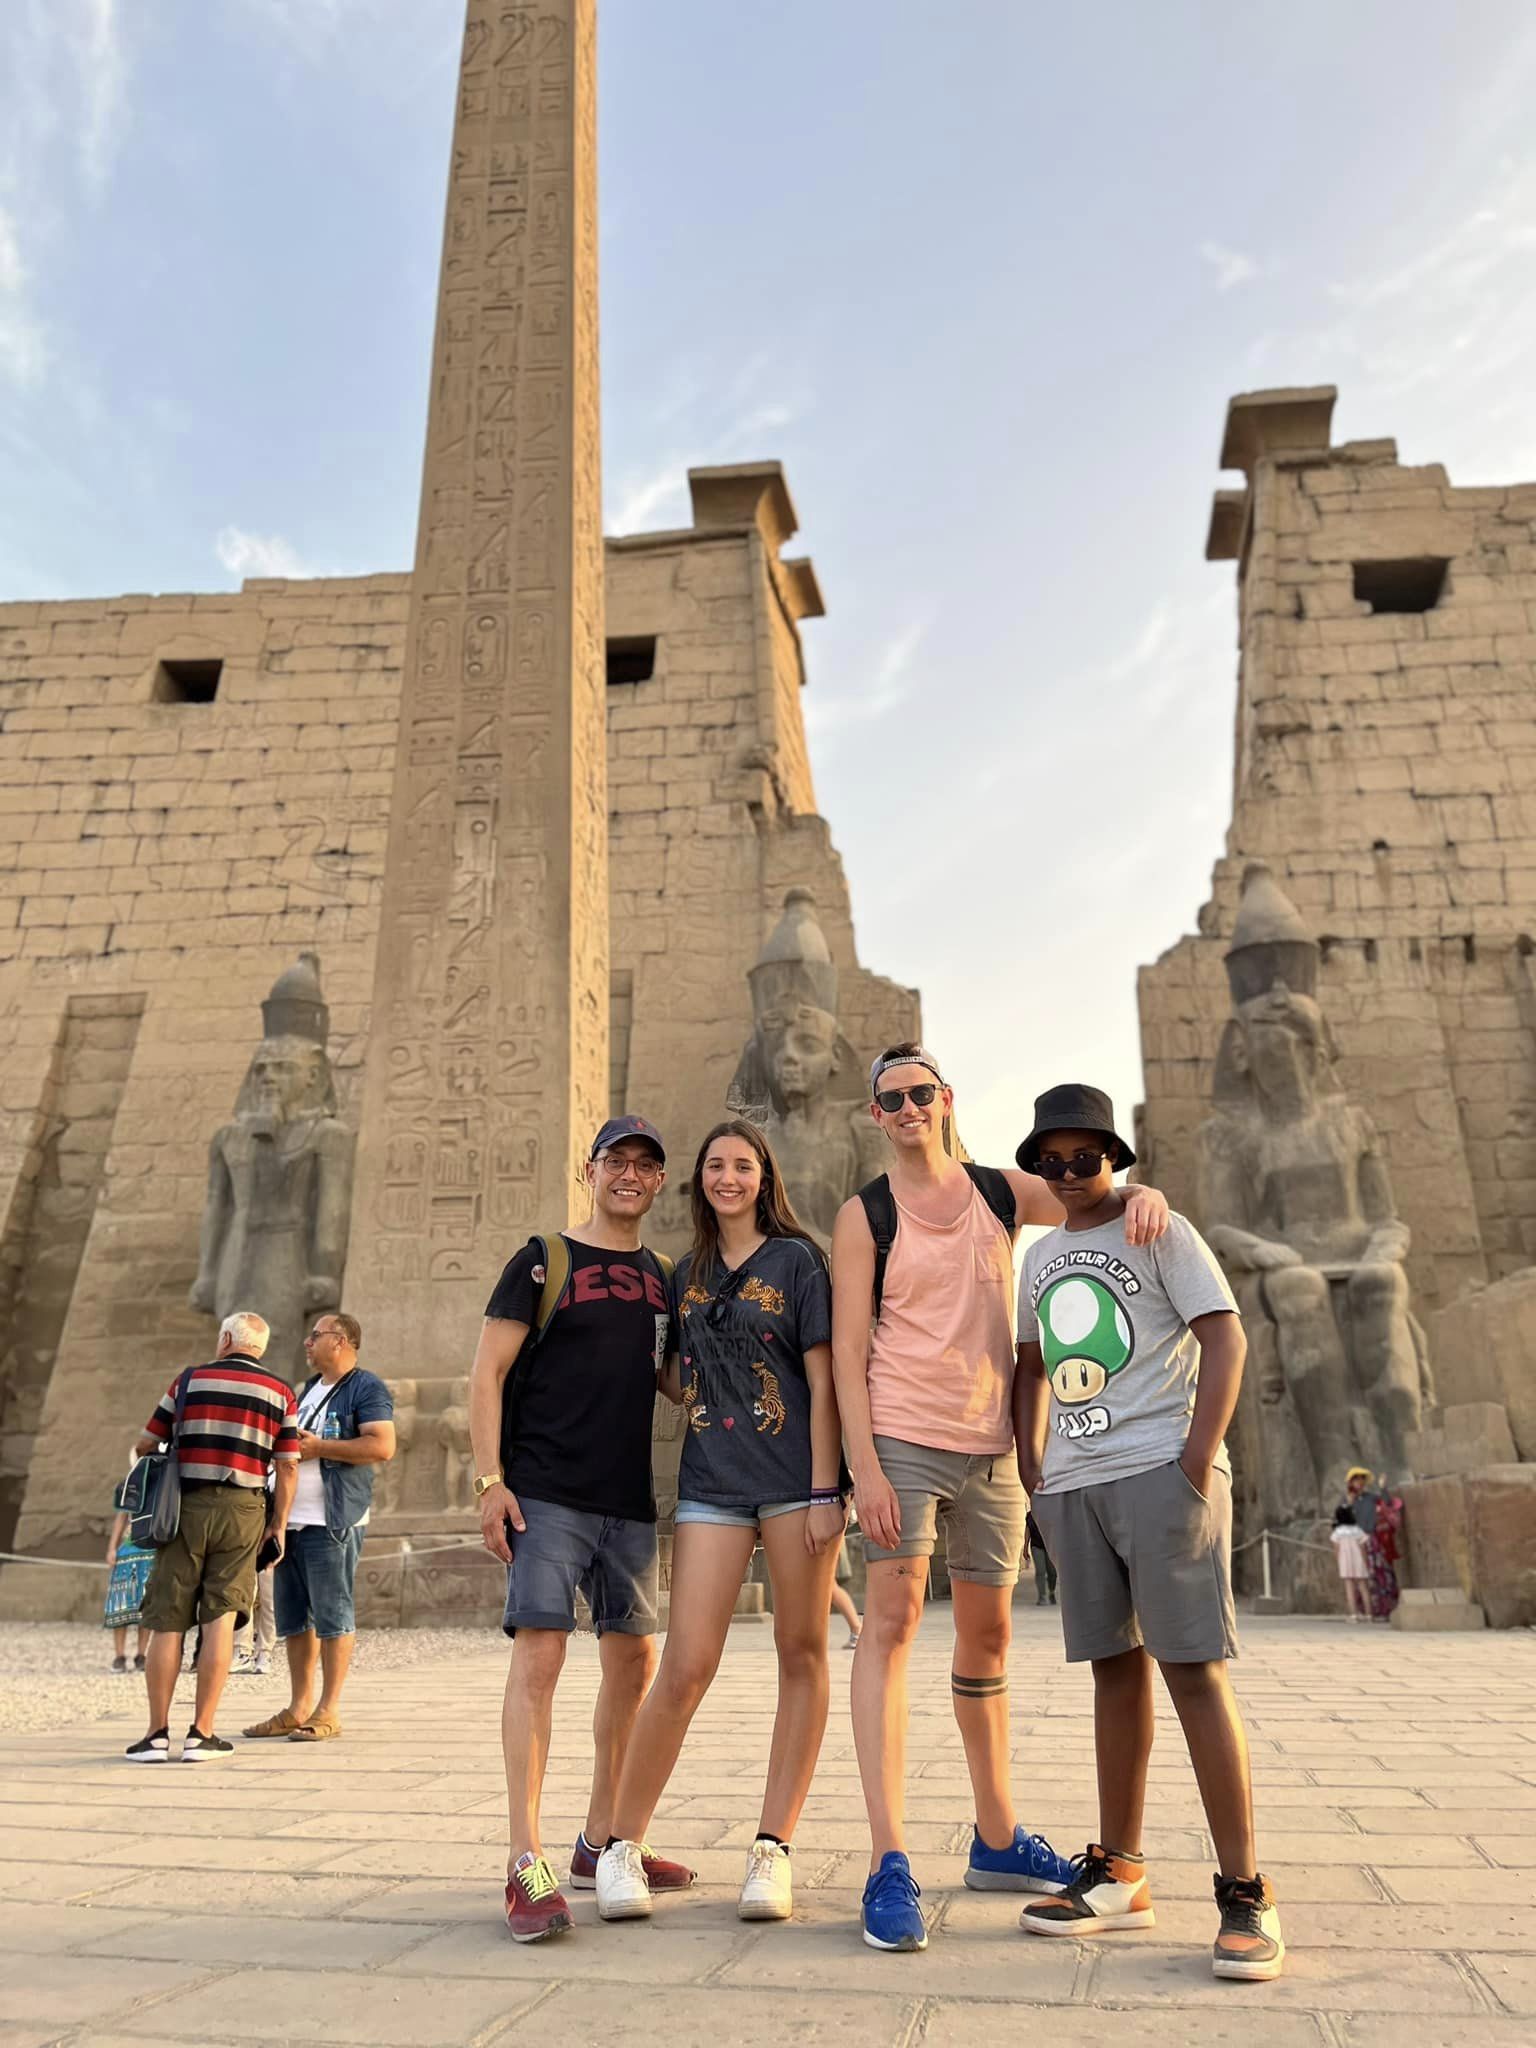 السياح خلال زيارتهم للمعابد المصرية بالأقصر